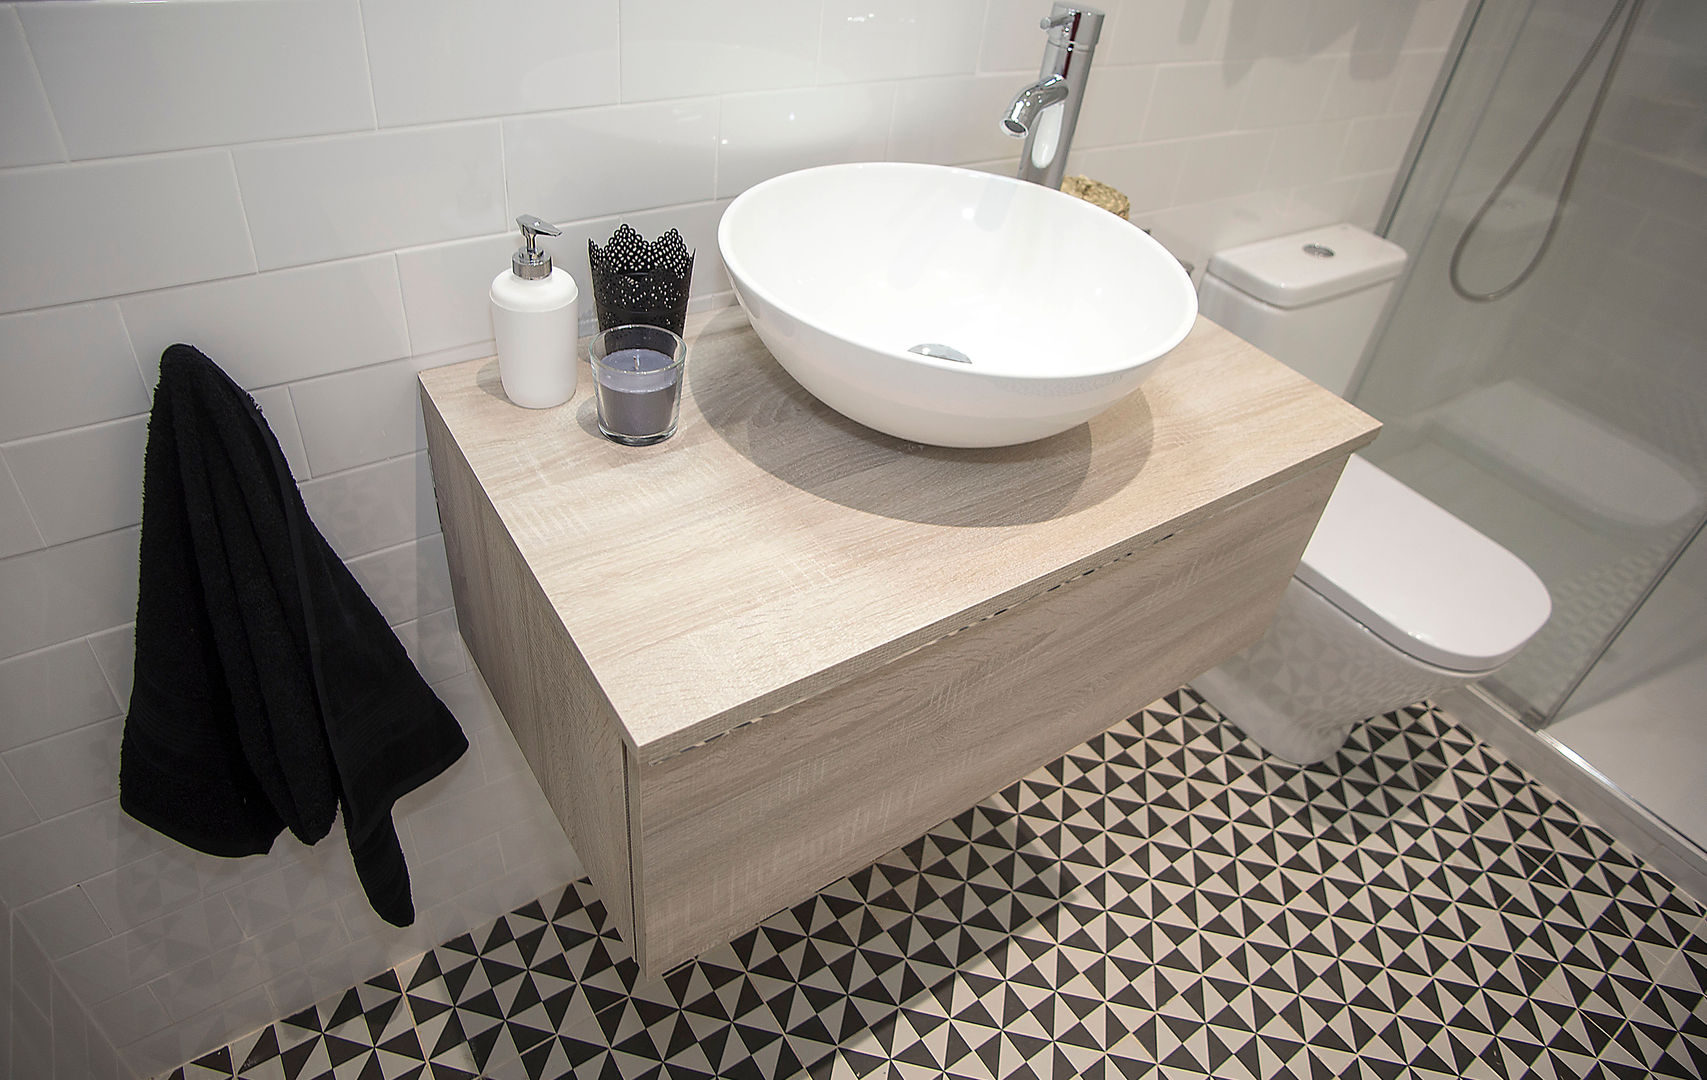 Cuarto de baño Grupo Inventia Baños de estilo moderno Azulejos reforma de baño,diseño de baño,baño alicatado,'